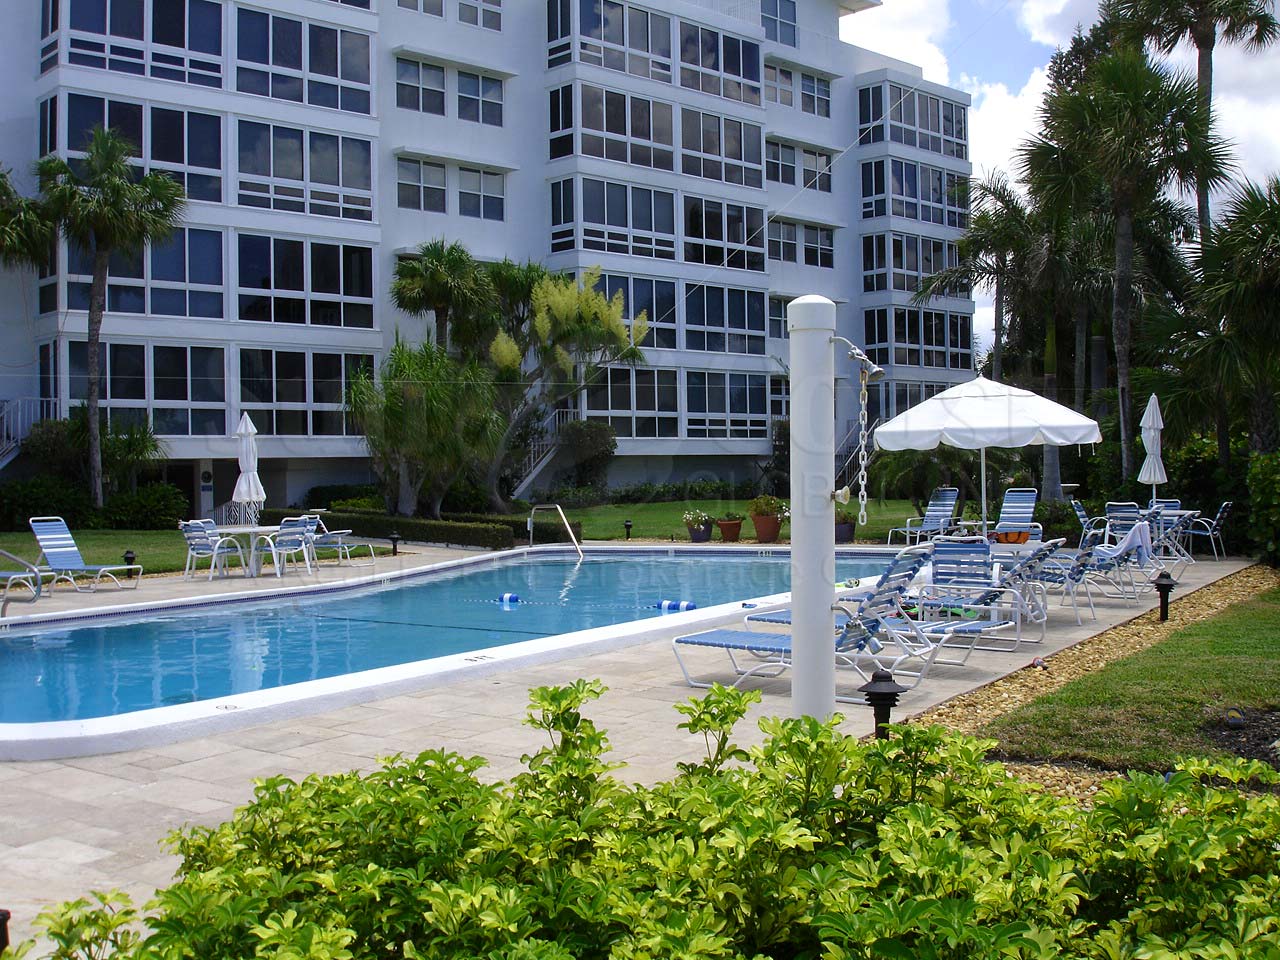 Royal Palm Club Community Pool